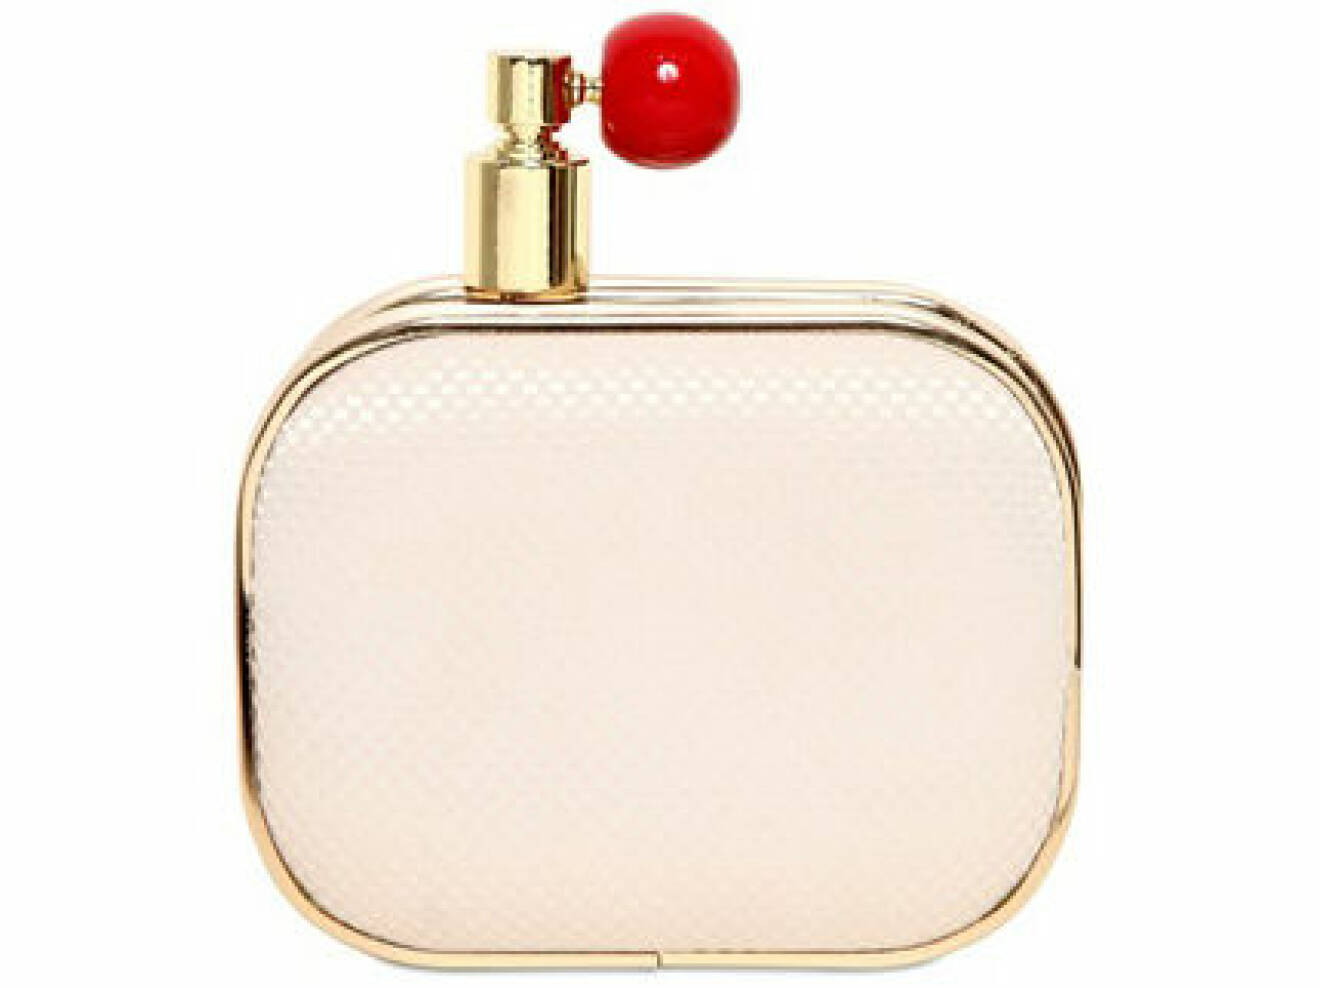 Väska, 3121 kr, Odile satin perfume clutch, Oui Odile! Luisaviaroma.com